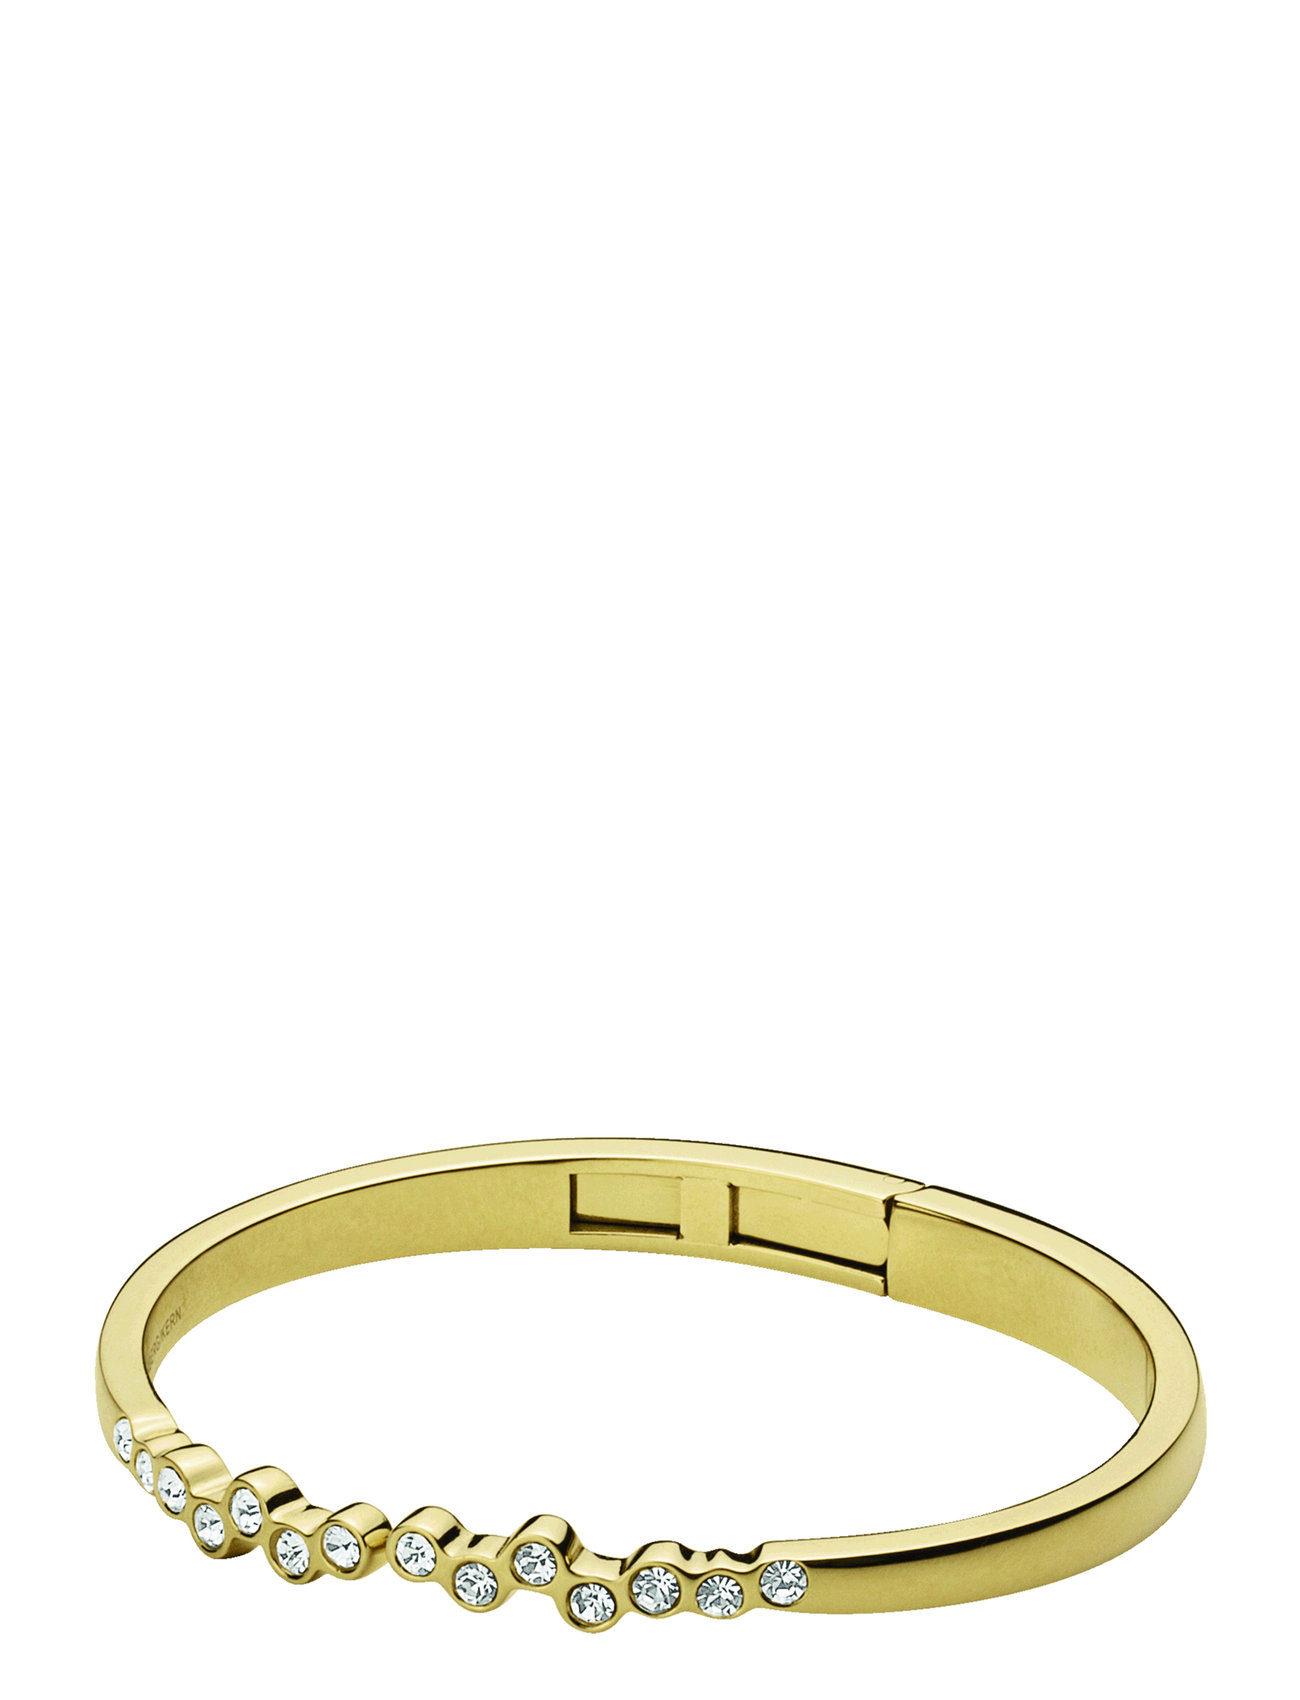 Trickle turnering rør Dyrberg armbånd – Rosa Sg Crystal Accessories Jewellery Bracelets Bangles  Dyrberg/Kern til dame i GOLD CRYSTAL - Pashion.dk